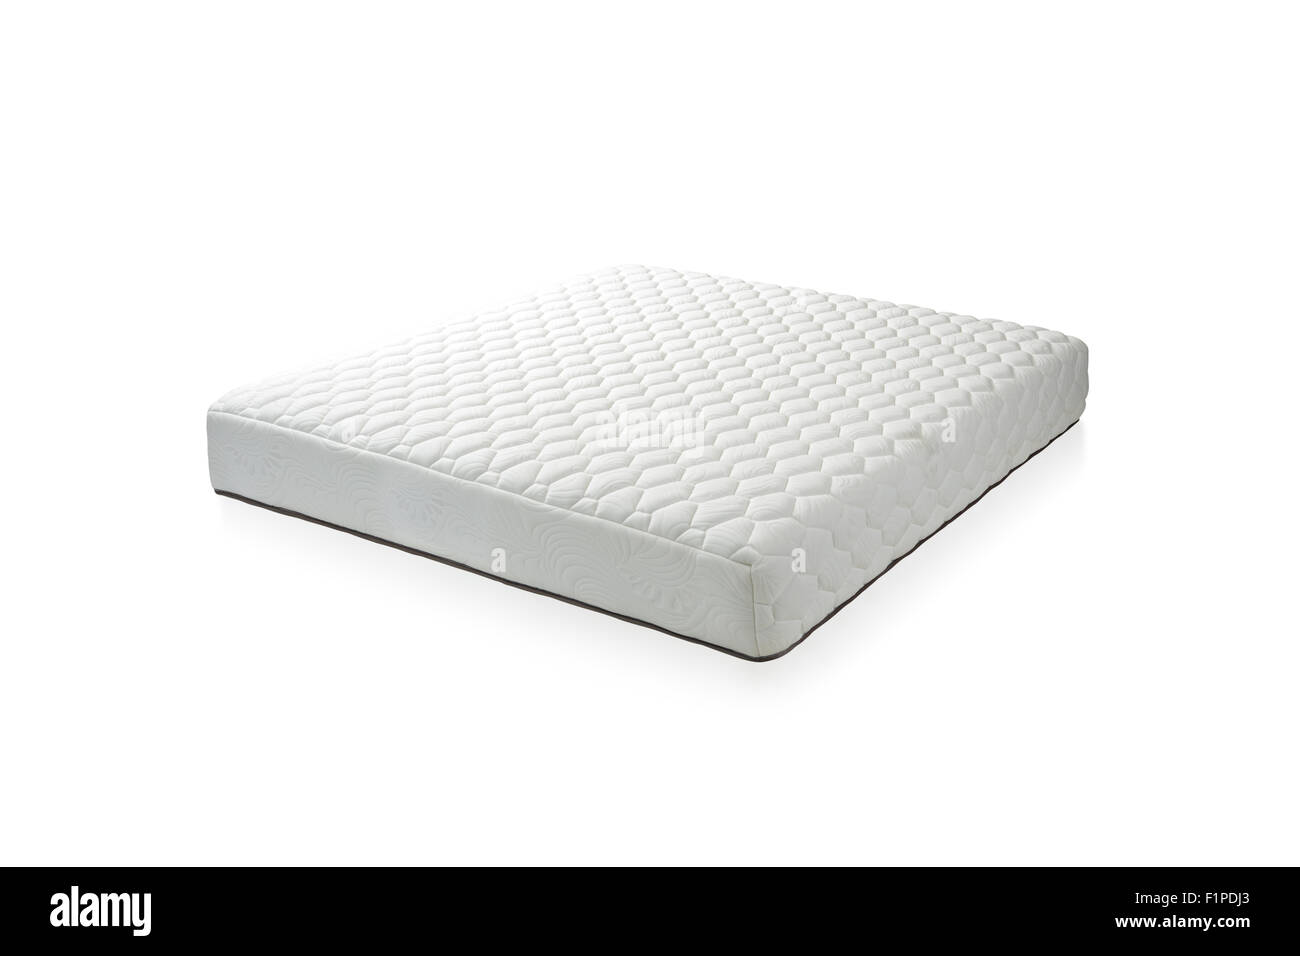 Il materasso che è supportato per dormire bene tutta la notte, l'immagine isolata su sfondo bianco Foto Stock